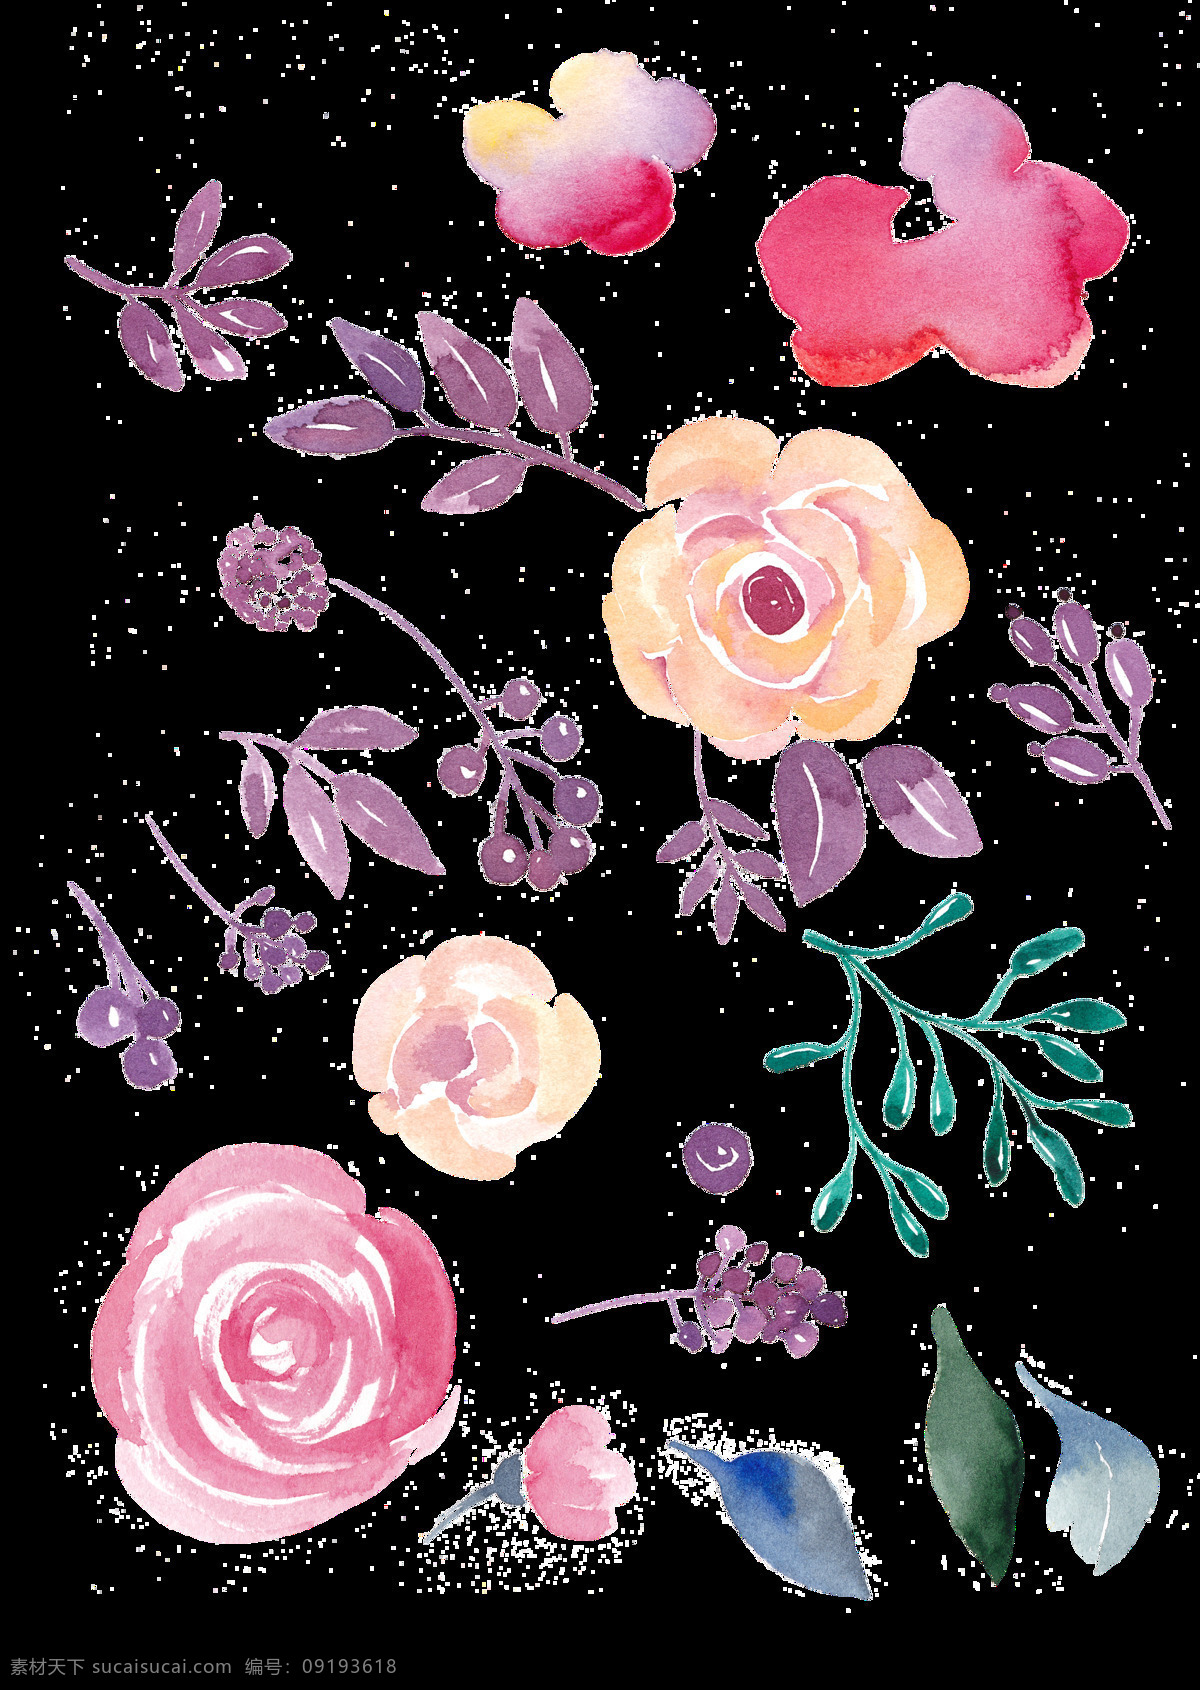 紫色 叶子 搭配 玫瑰 花朵 透明 粉红色 美工色 绿色 手绘 水彩 透明素材 免扣素材 装饰图片